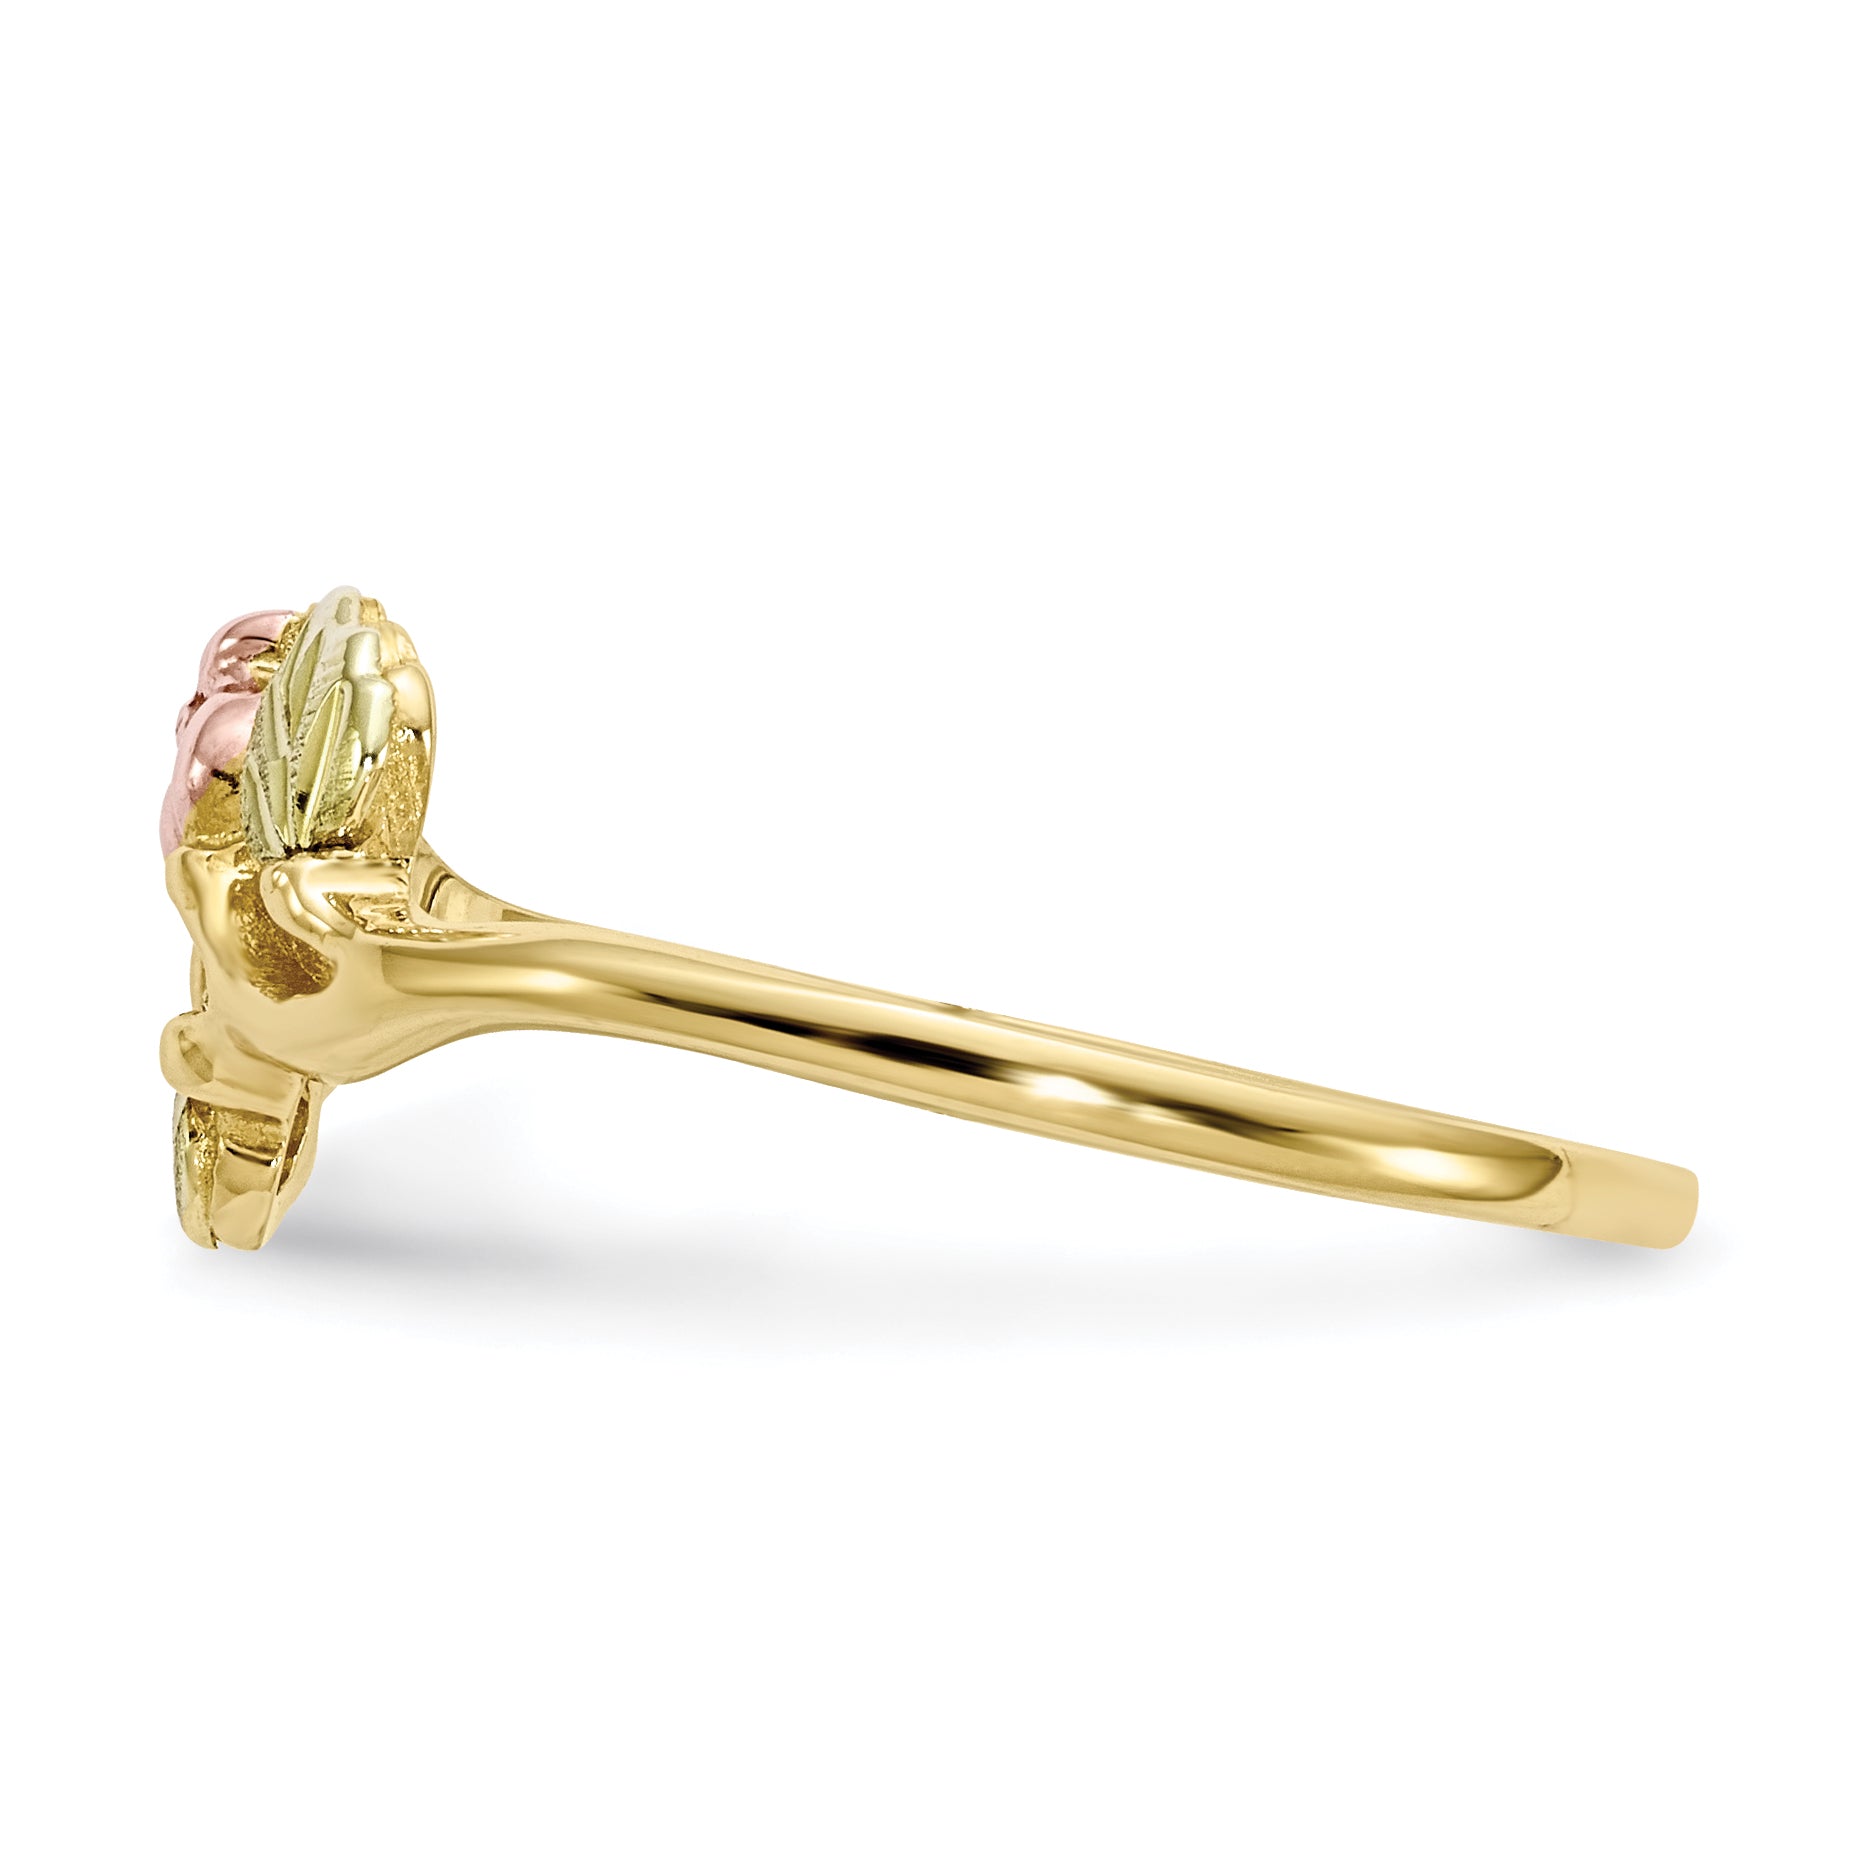 10K Tri-Color Black Hills Gold Rose Ring